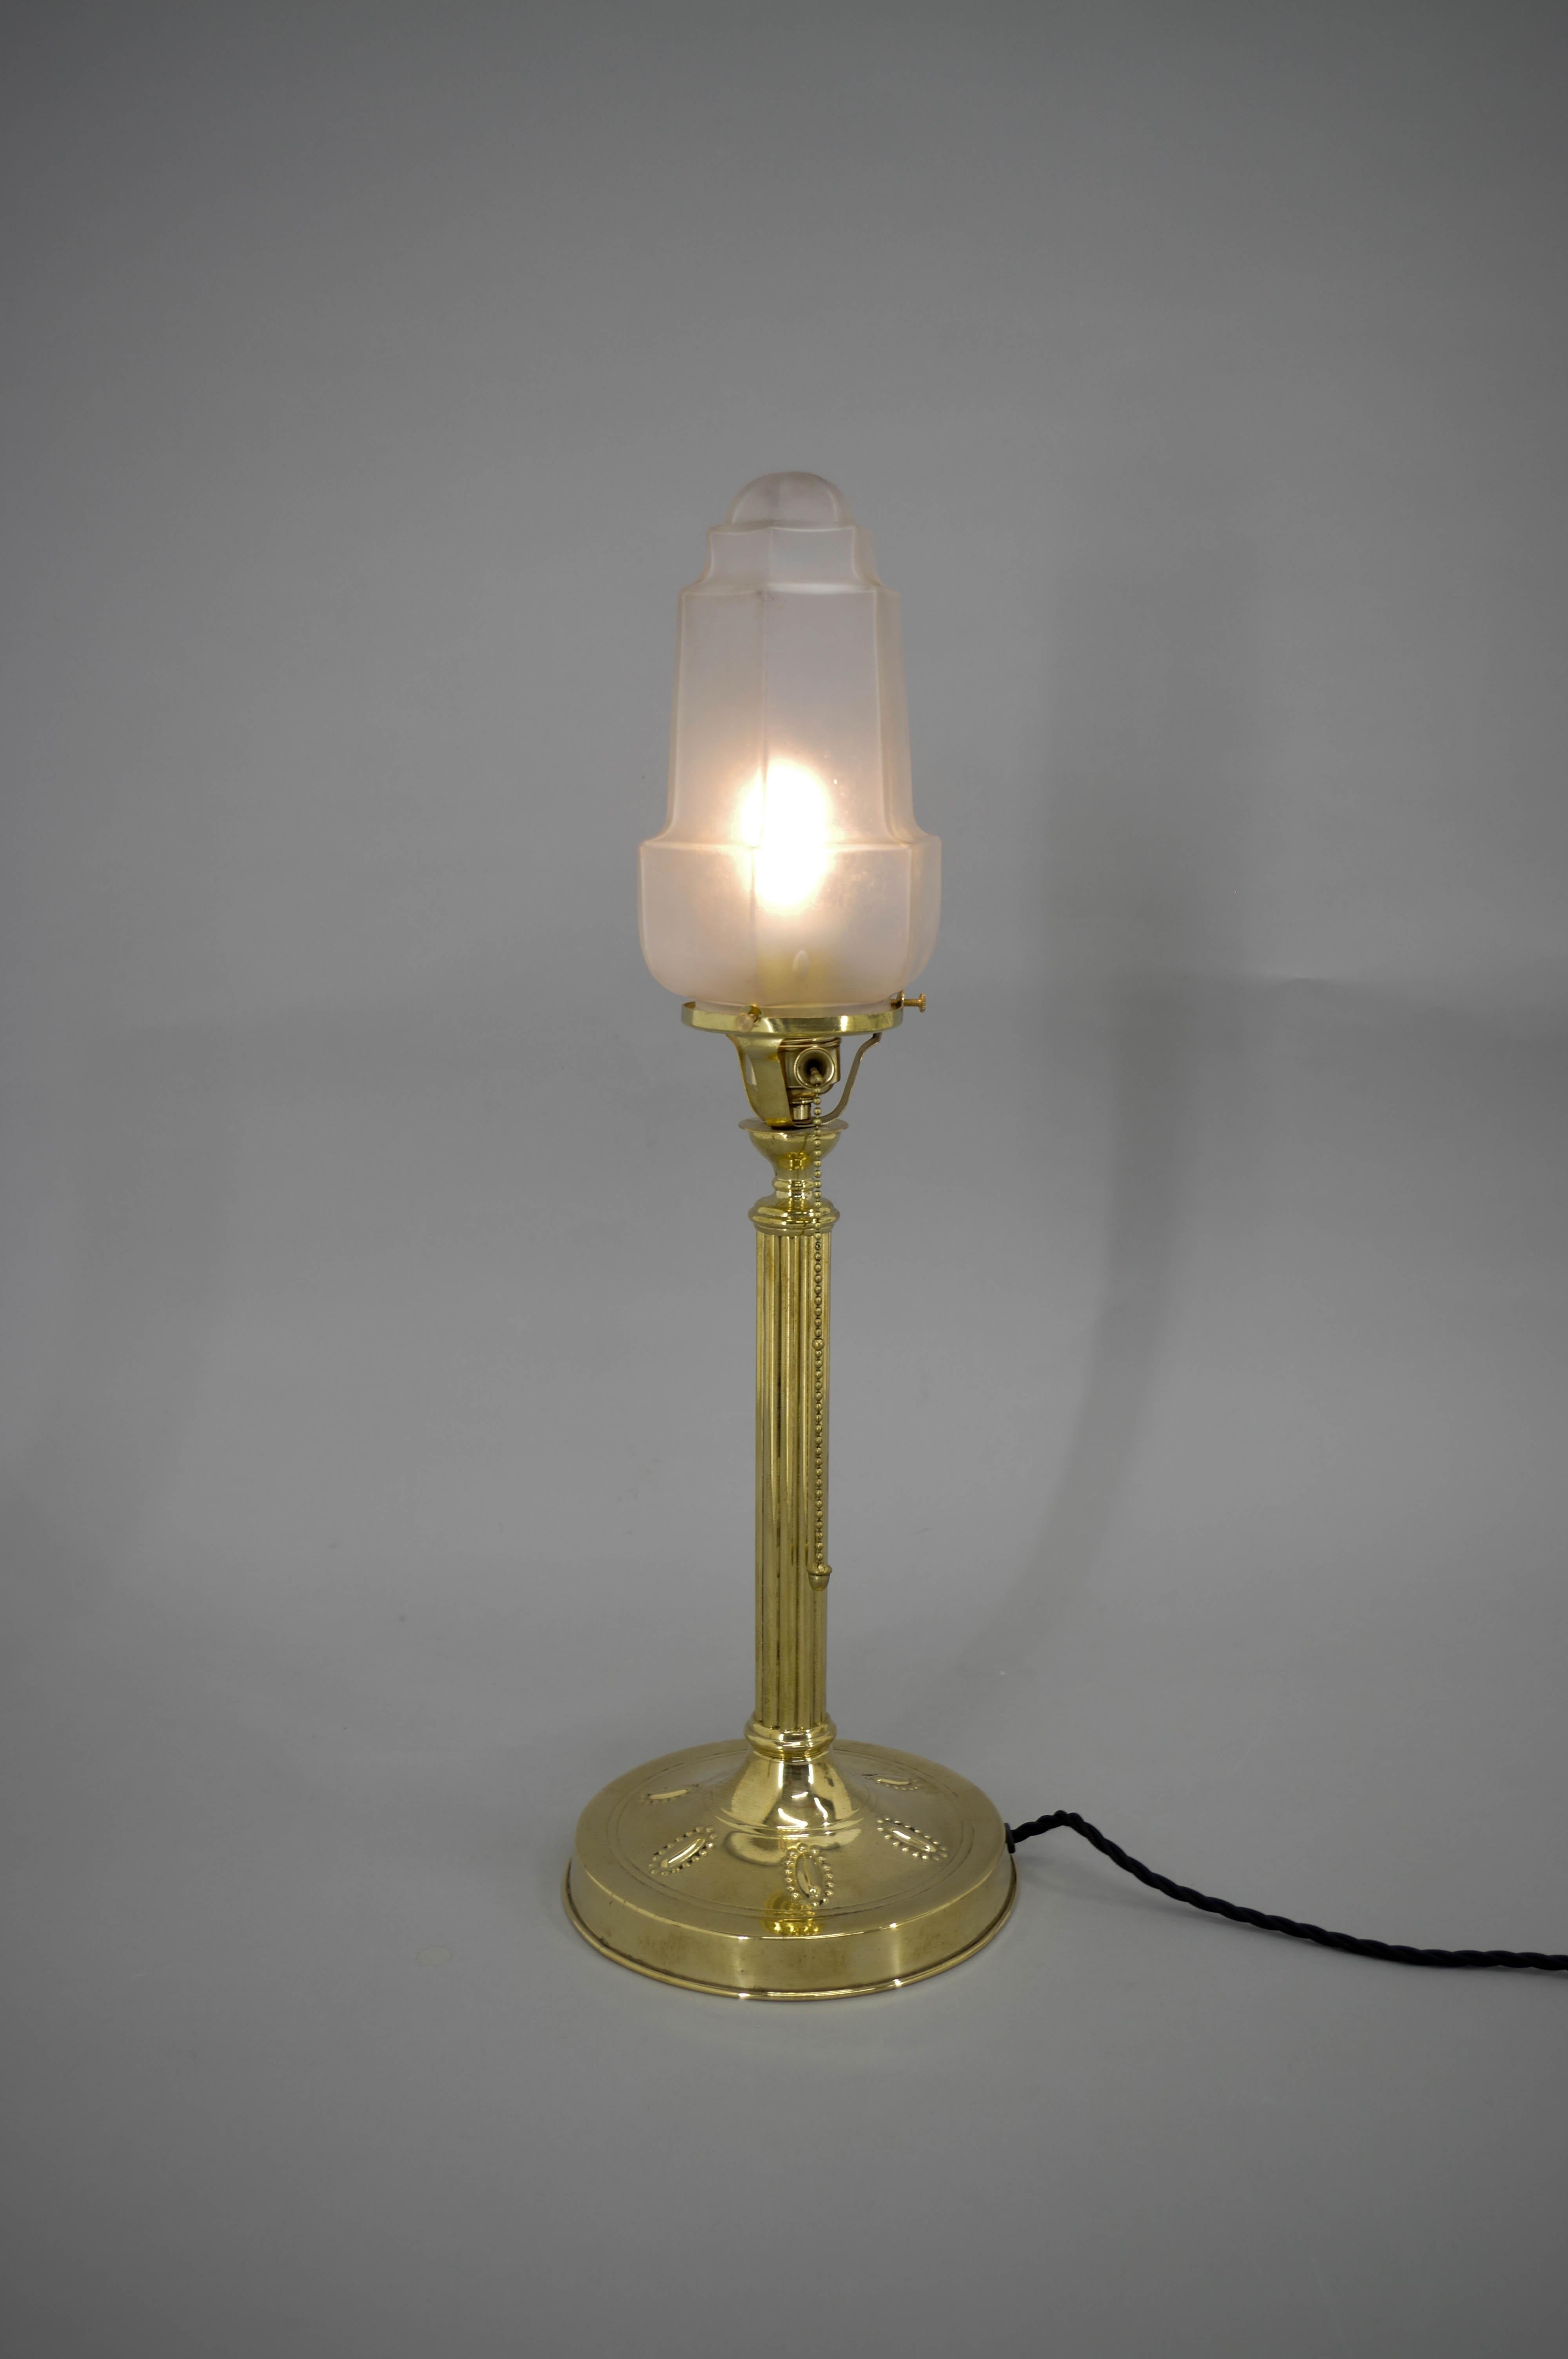 Lampe de table Art Nouveau fabriquée en Autriche dans les années 1910.
Restauré : nettoyé, poli, recâblé
1x40W, ampoule E25-E27
Adaptateur pour prise américaine inclus